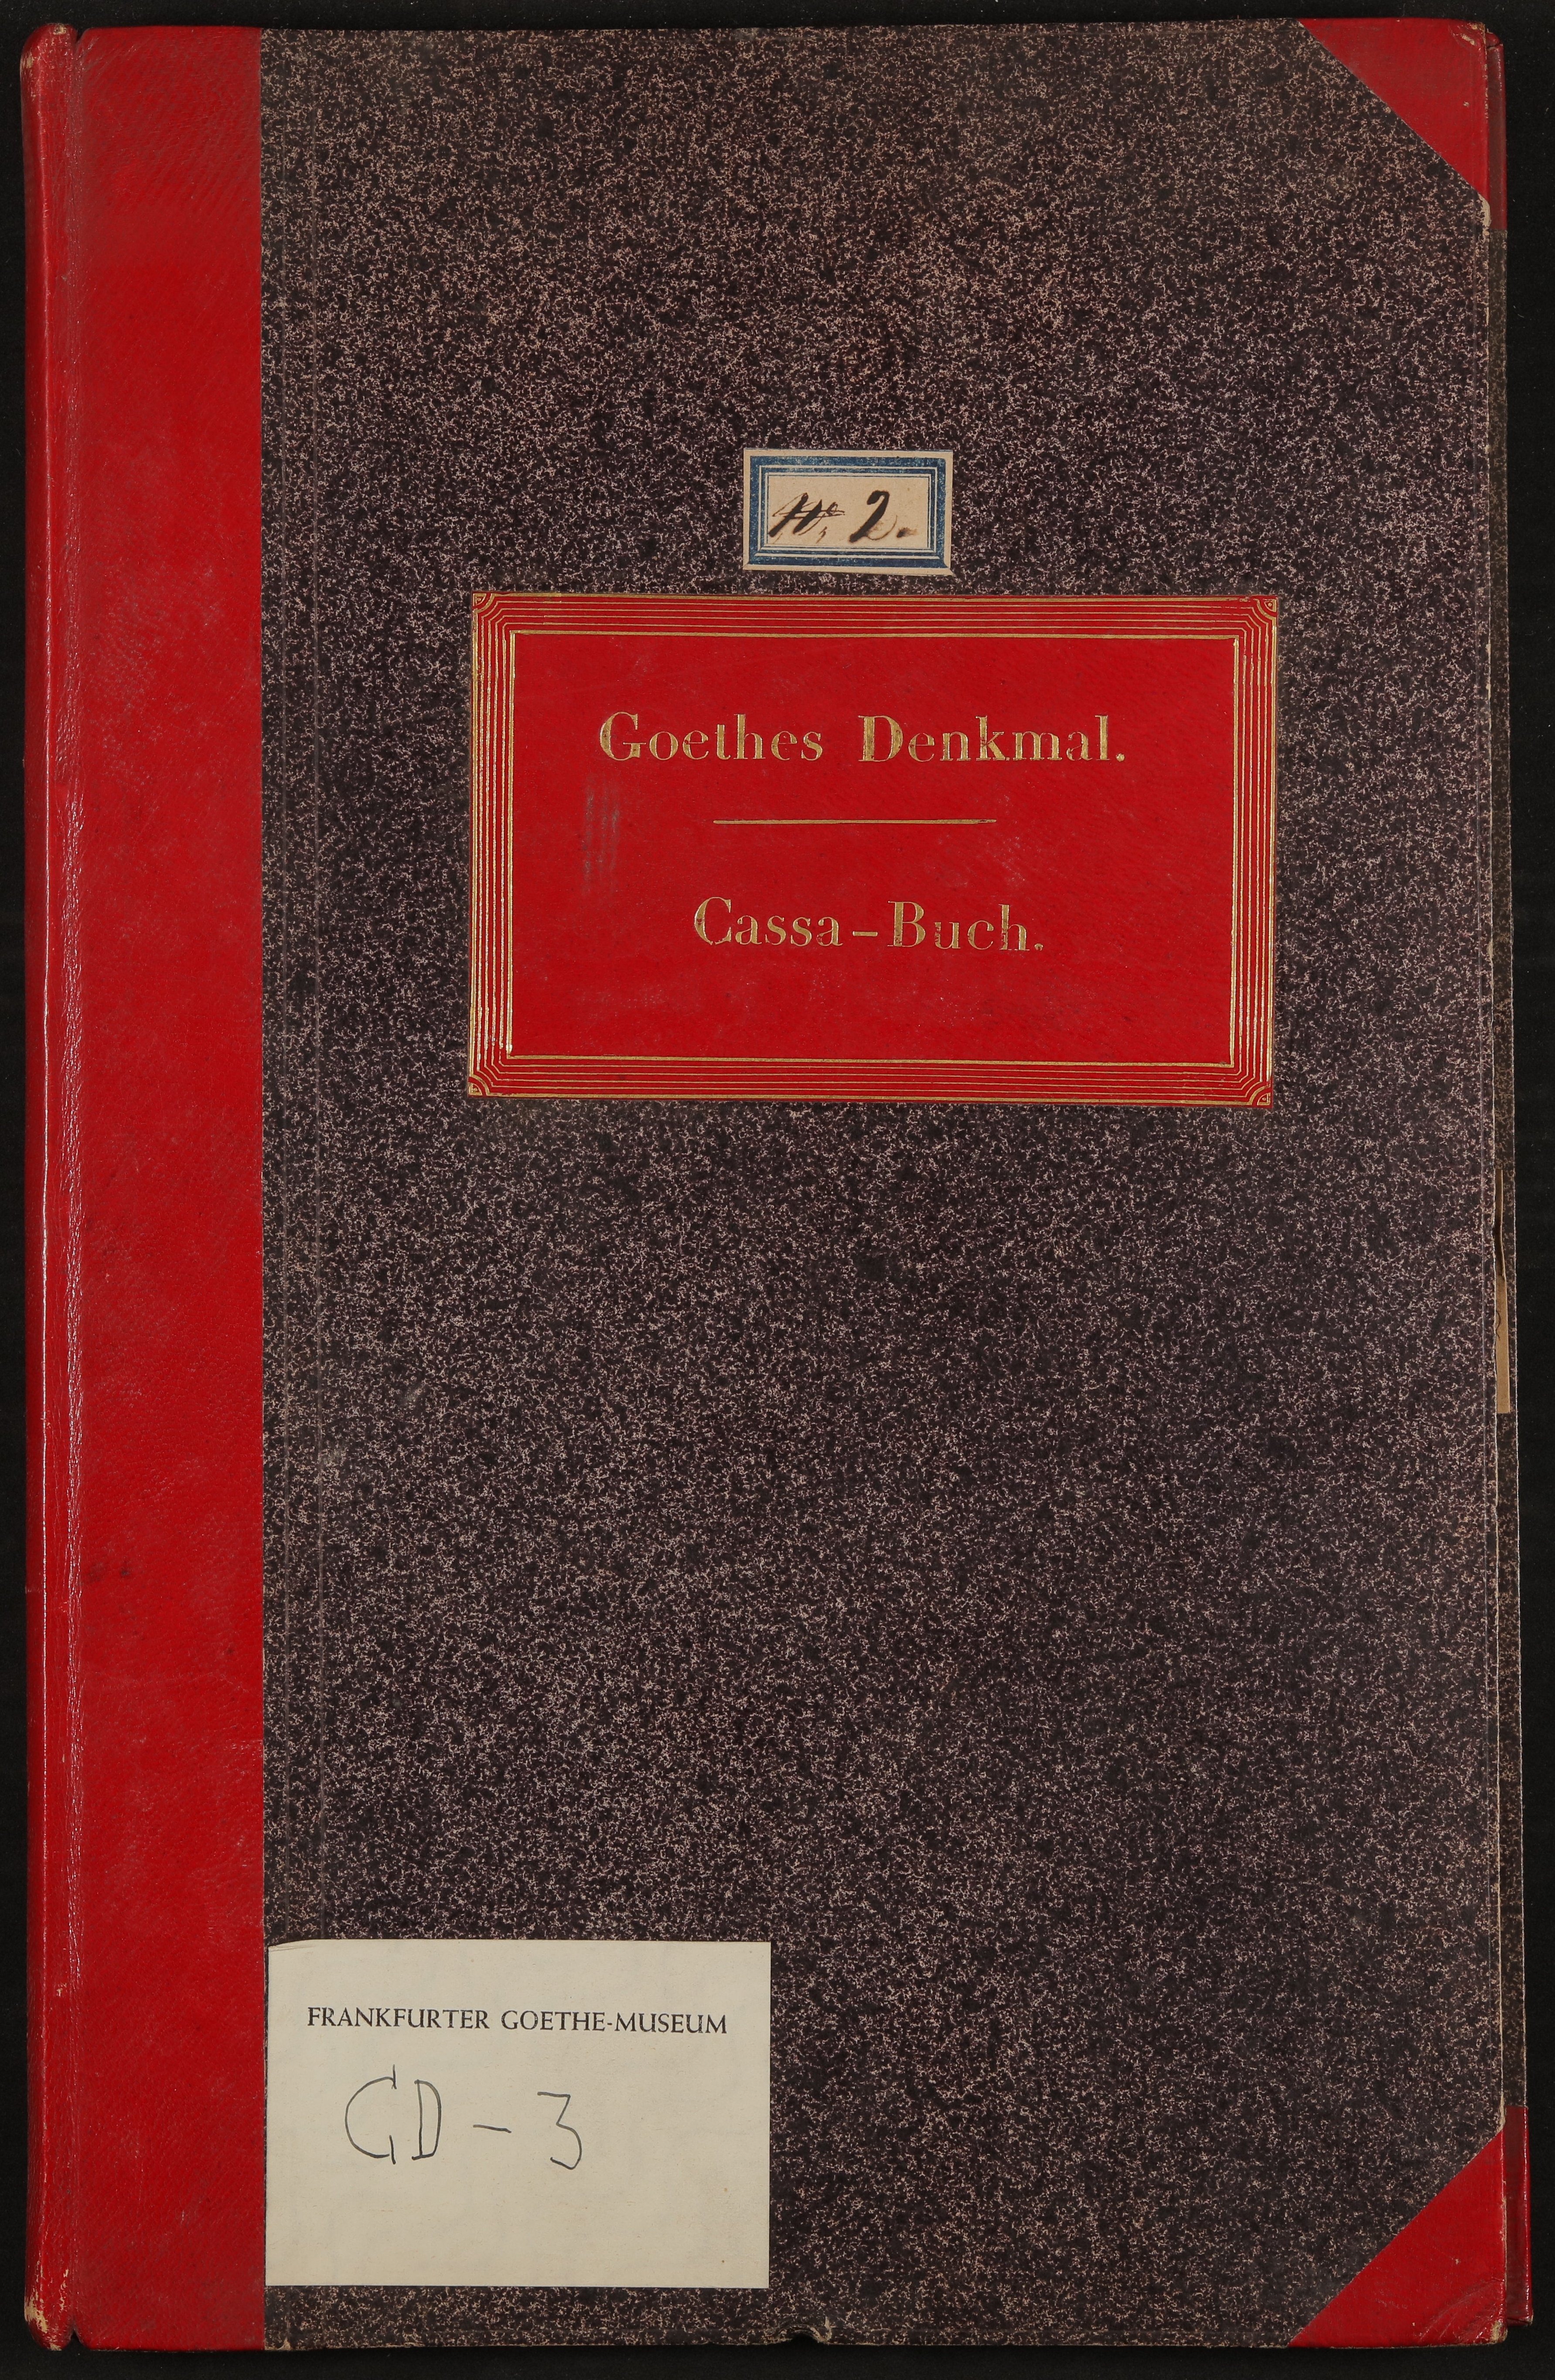 Hs-31664 (Freies Deutsches Hochstift / Frankfurter Goethe-Museum Public Domain Mark)